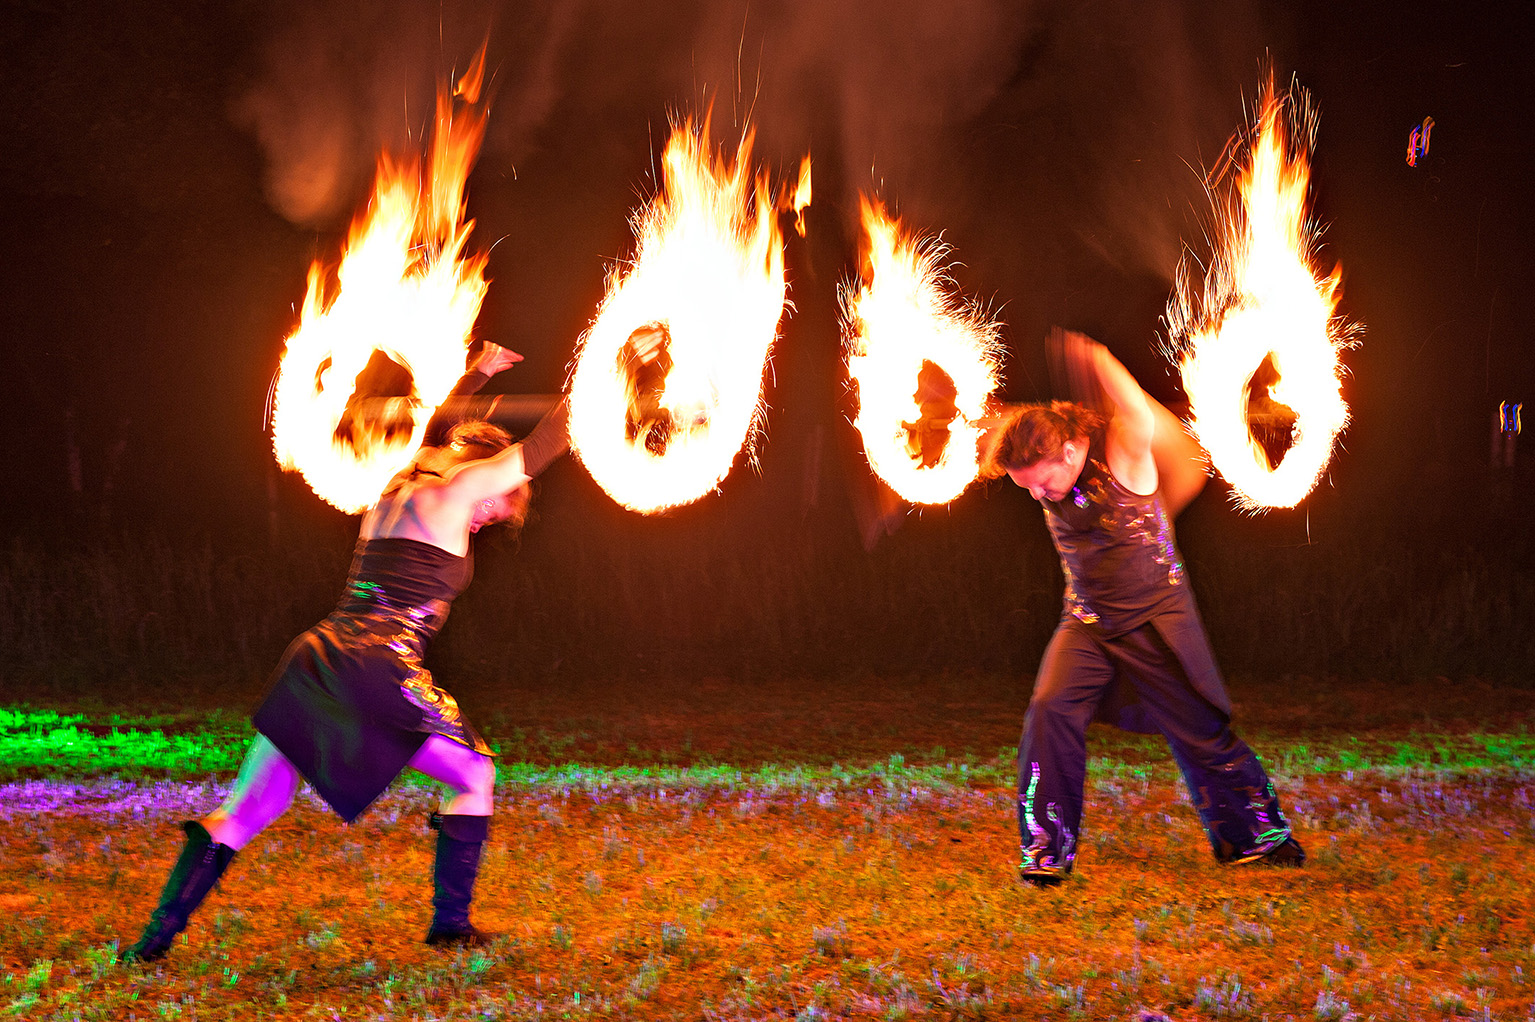 Fantômes de Flammes aus Augsburg zeigen ihre gefragte Feuershow.